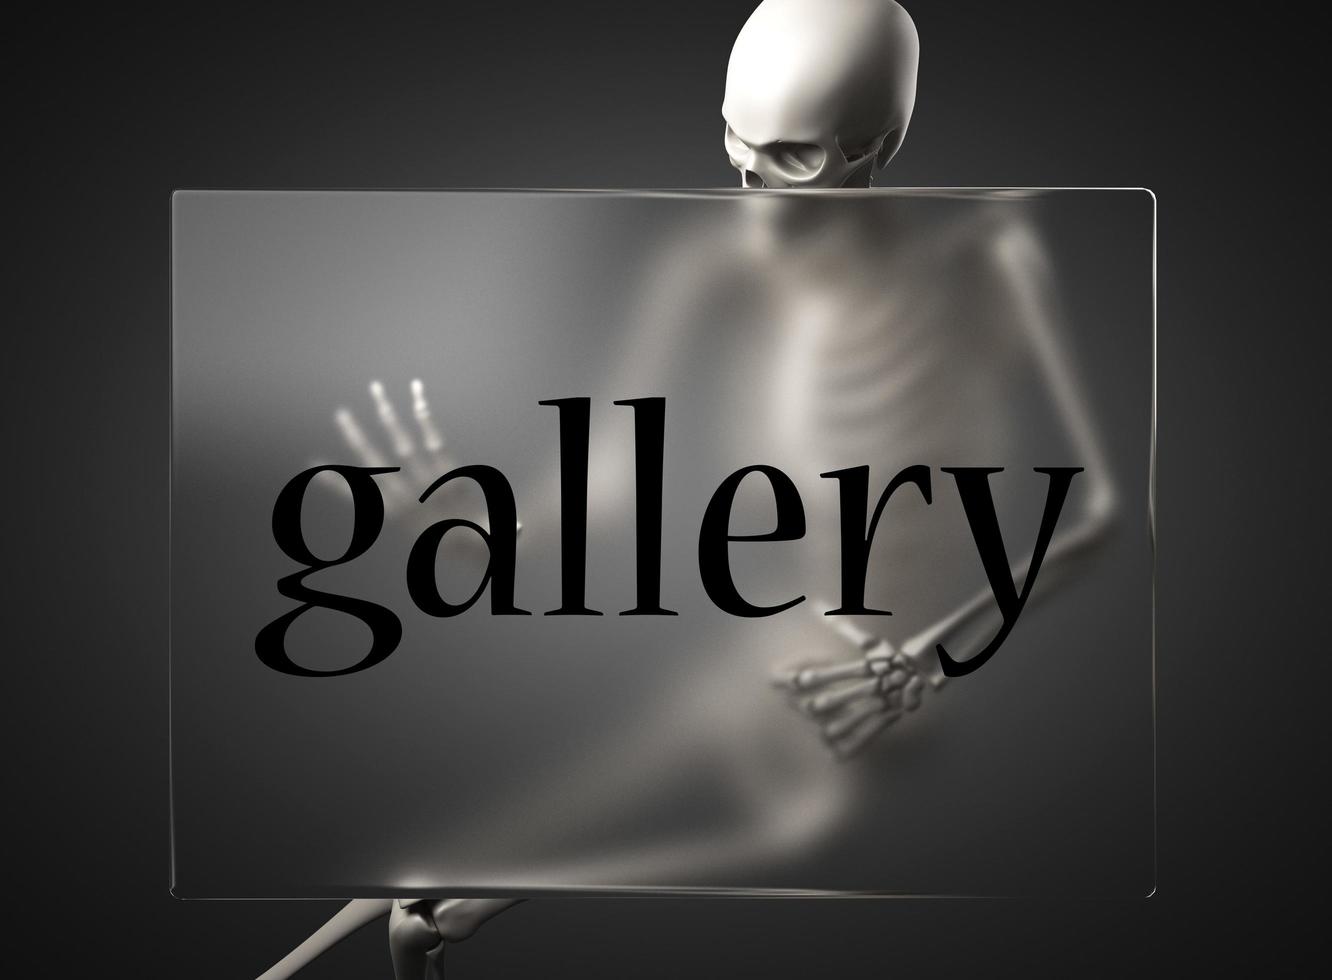 Galeriewort auf Glas und Skelett foto